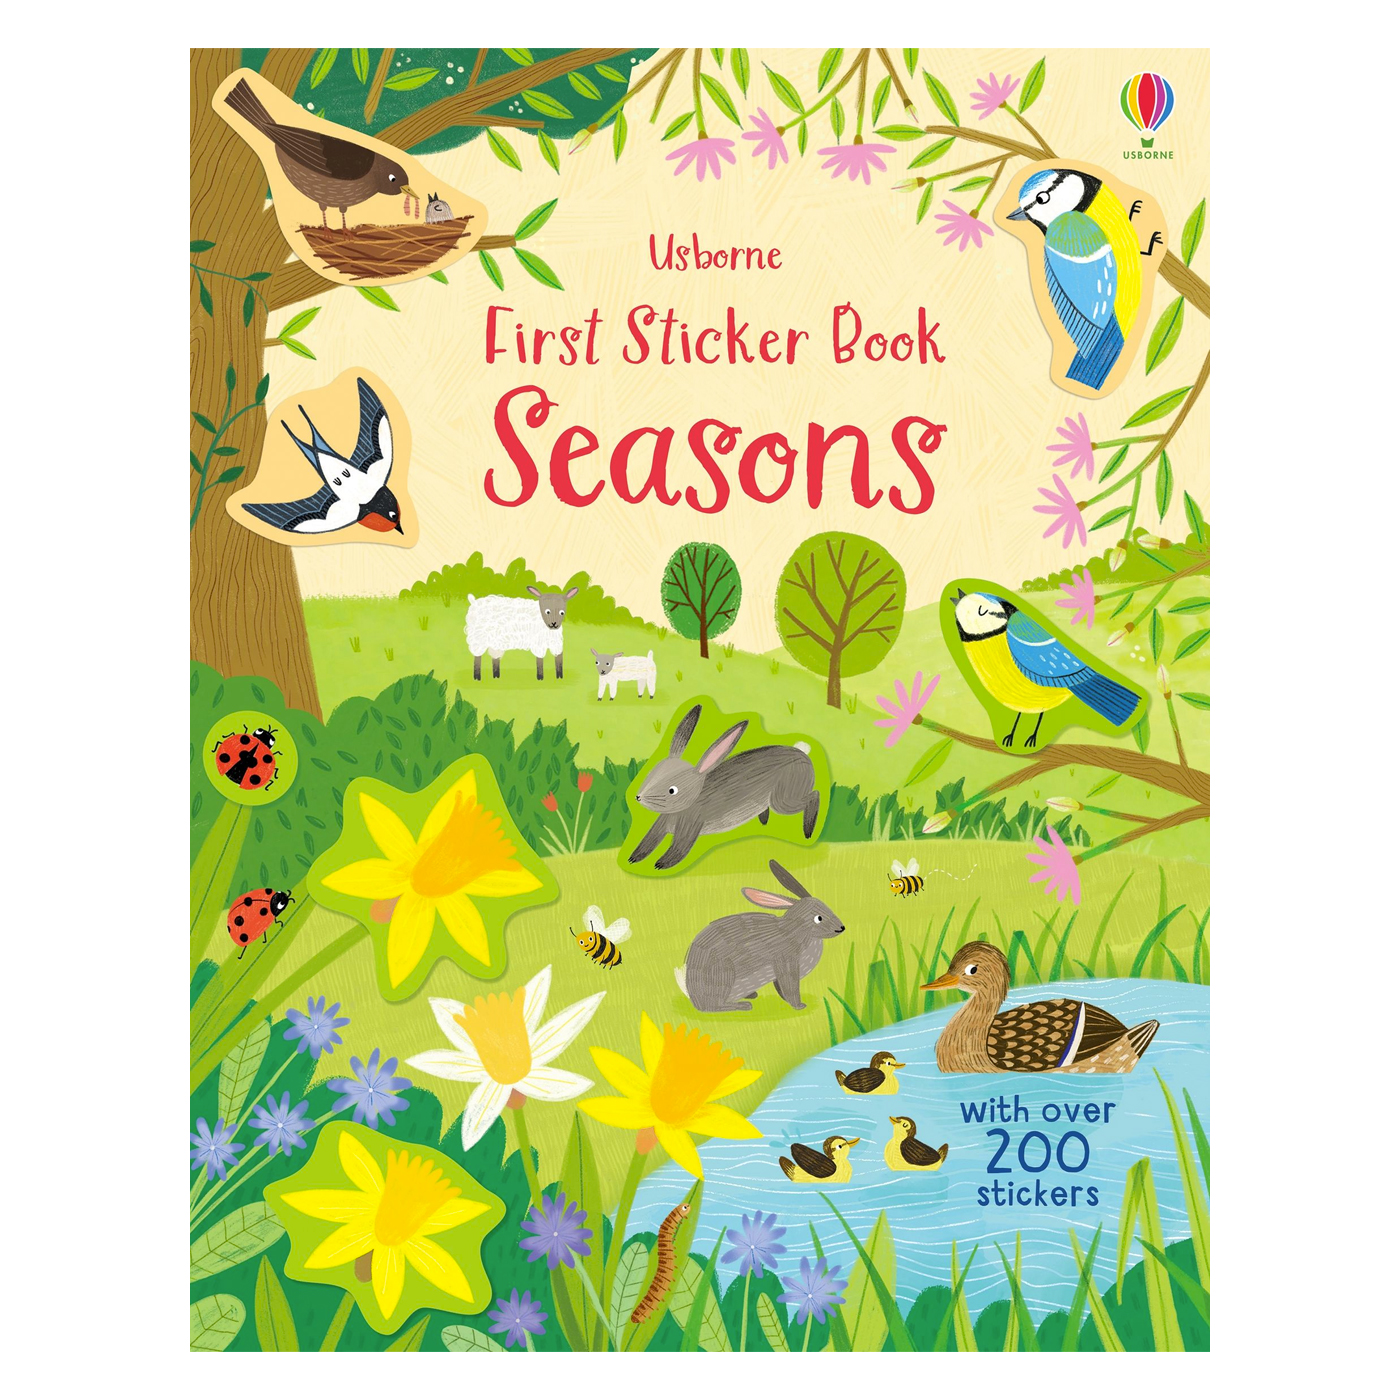  First Sticker Book Seasons